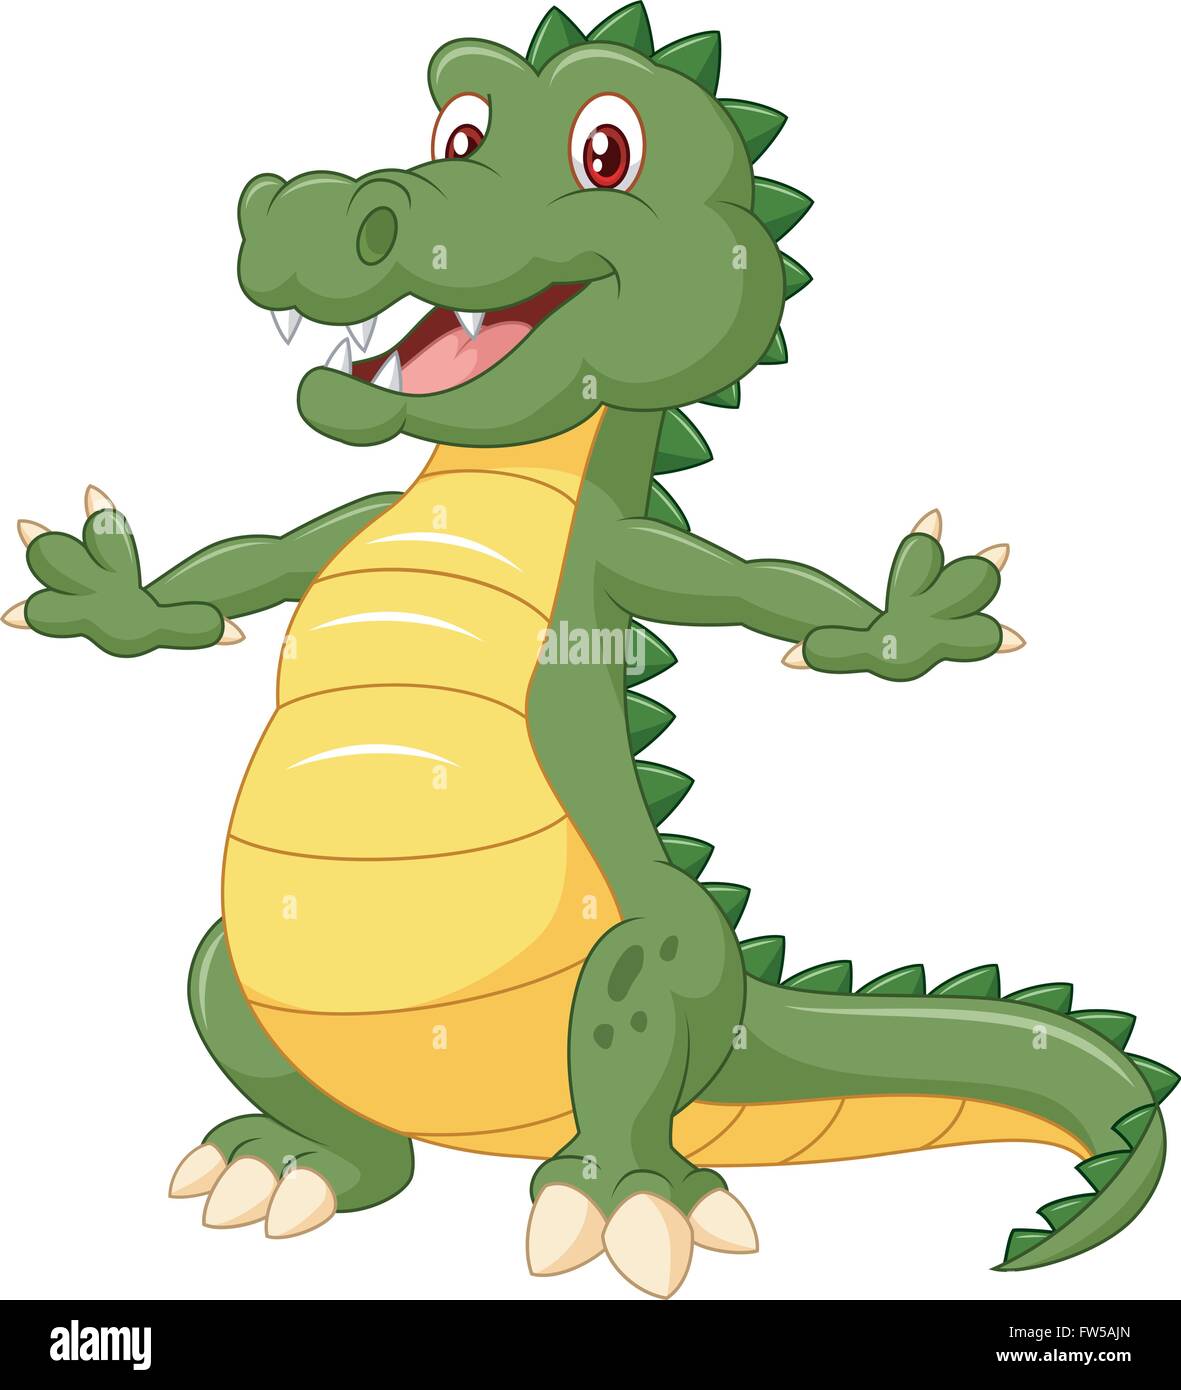 Happy cartoon crocodile posing Stock Vector